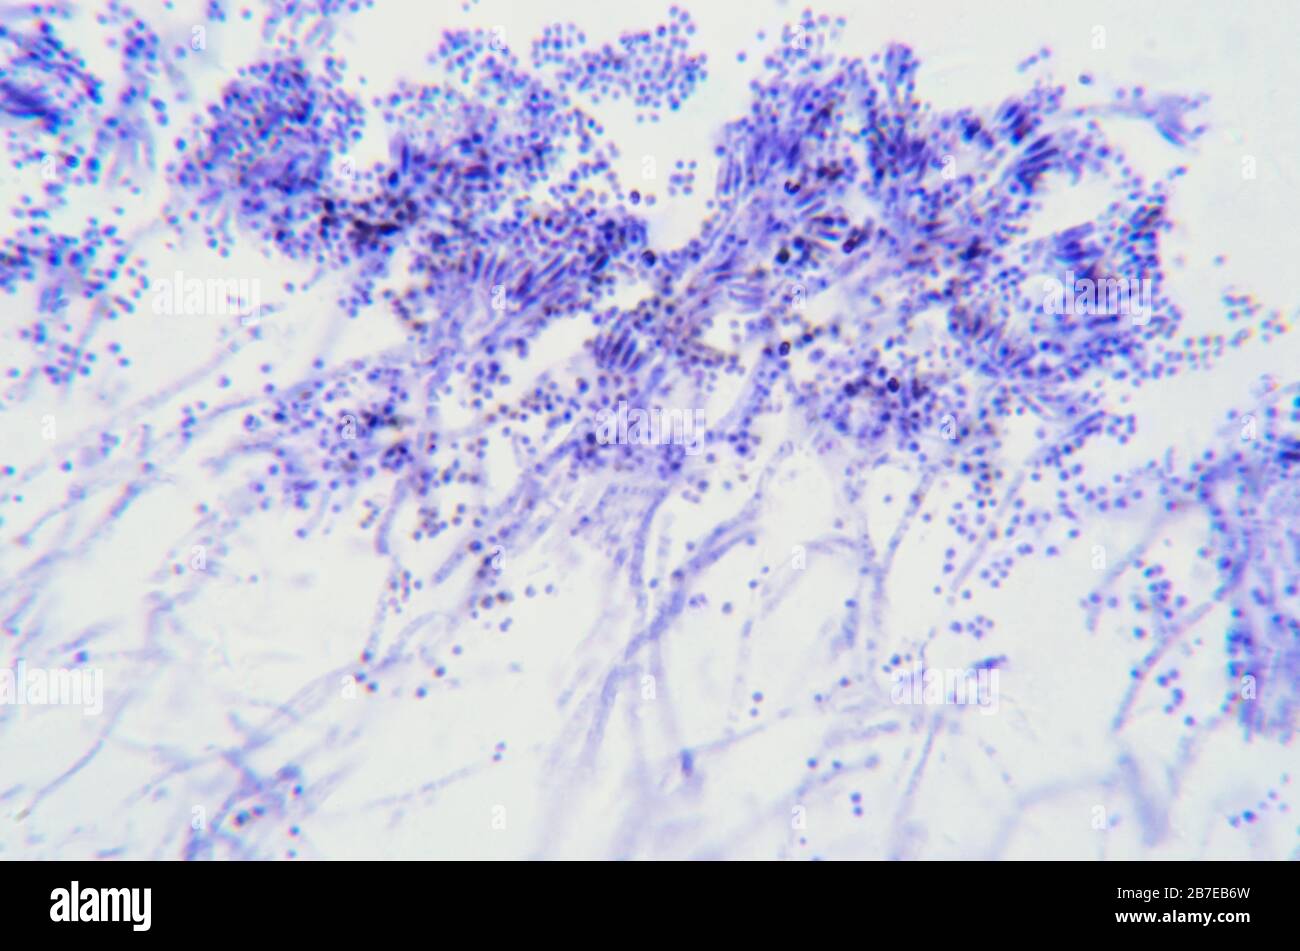 Penicillium verzweigte, ascomycetöse Pilze unter dem Mikroskop. Für den Menschen sind Ascomyceten eine Quelle von medizinischen Verbindungen, wie Antibiotika. Stockfoto